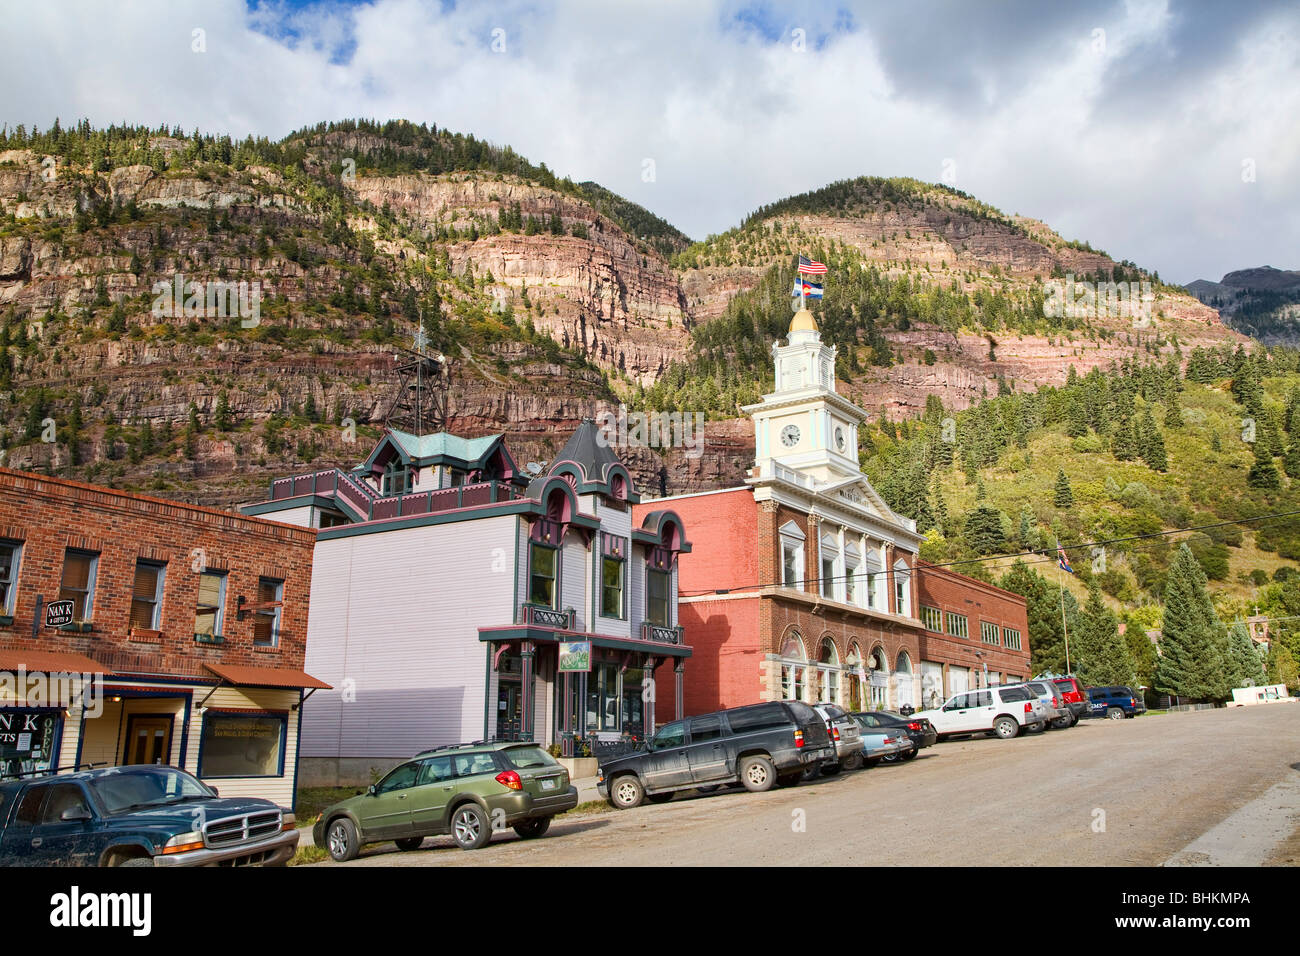 Les montagnes entourent la petite ville de Ouray, Colorado. Banque D'Images